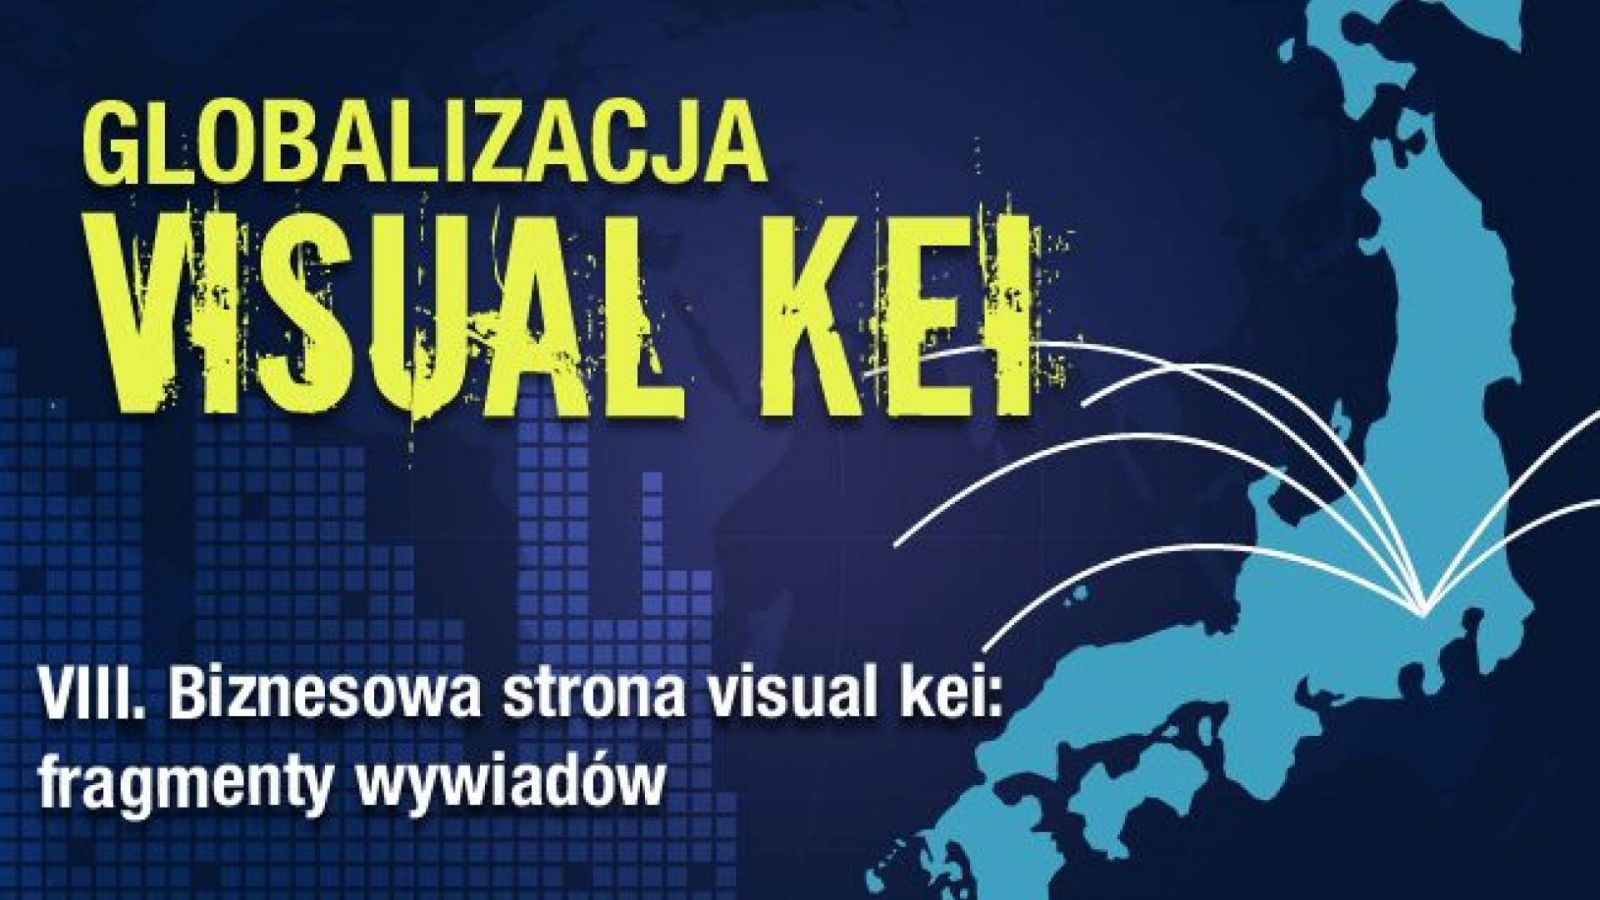 Globalizacja visual kei: Biznesowa strona visual kei - fragmenty wywiadów © Lydia Michalitsianos